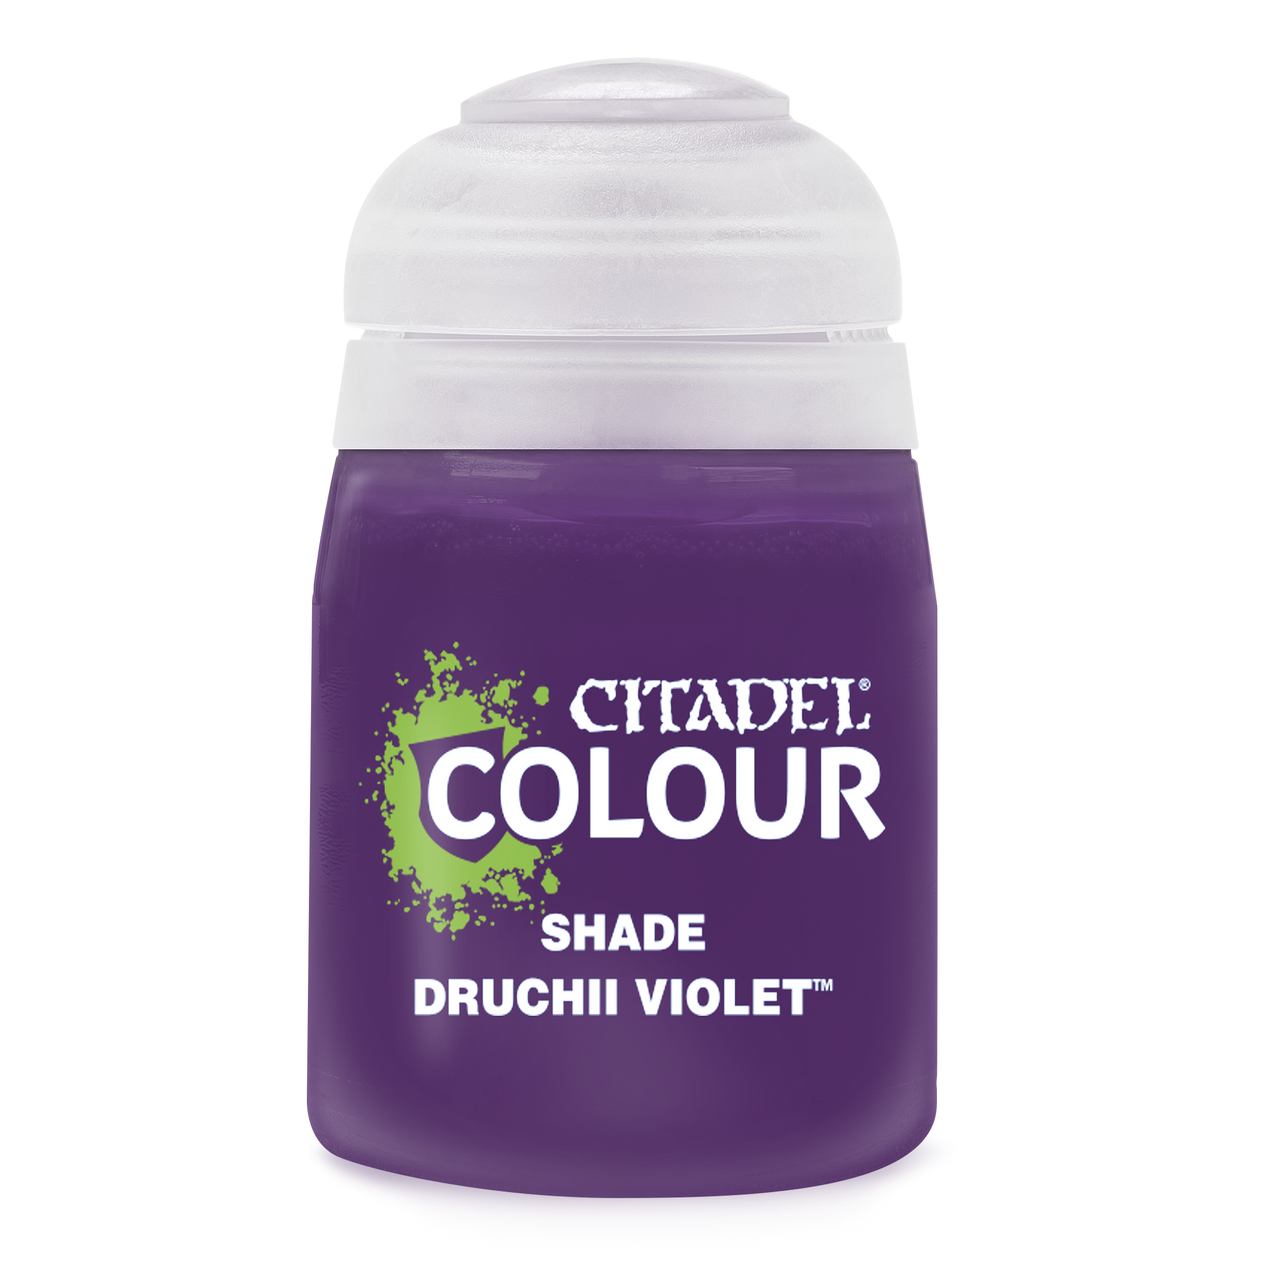 Druchii Violet Shade